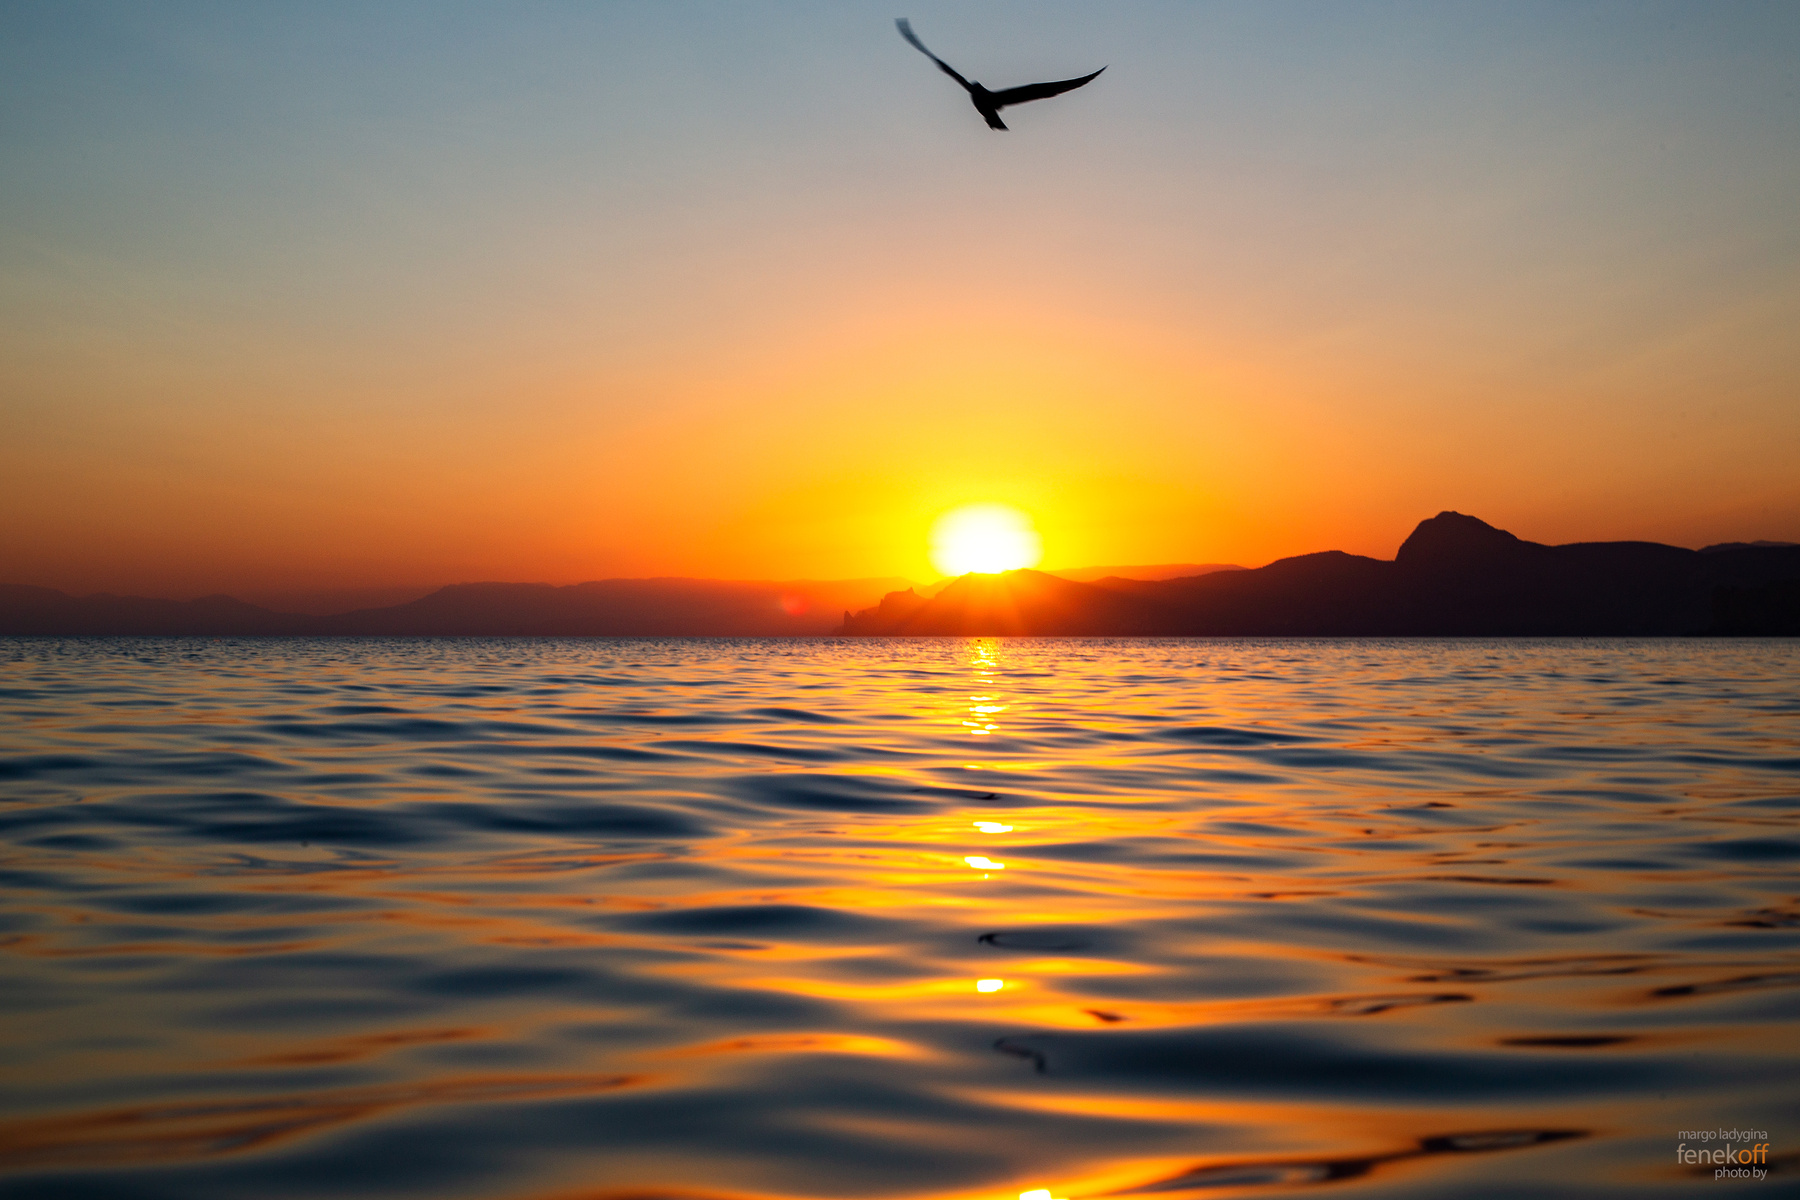 Закат на Чёрном море закат черное море крым чайка мыс алчак солнце путешествие природа sunset crimea sea black cape alchak